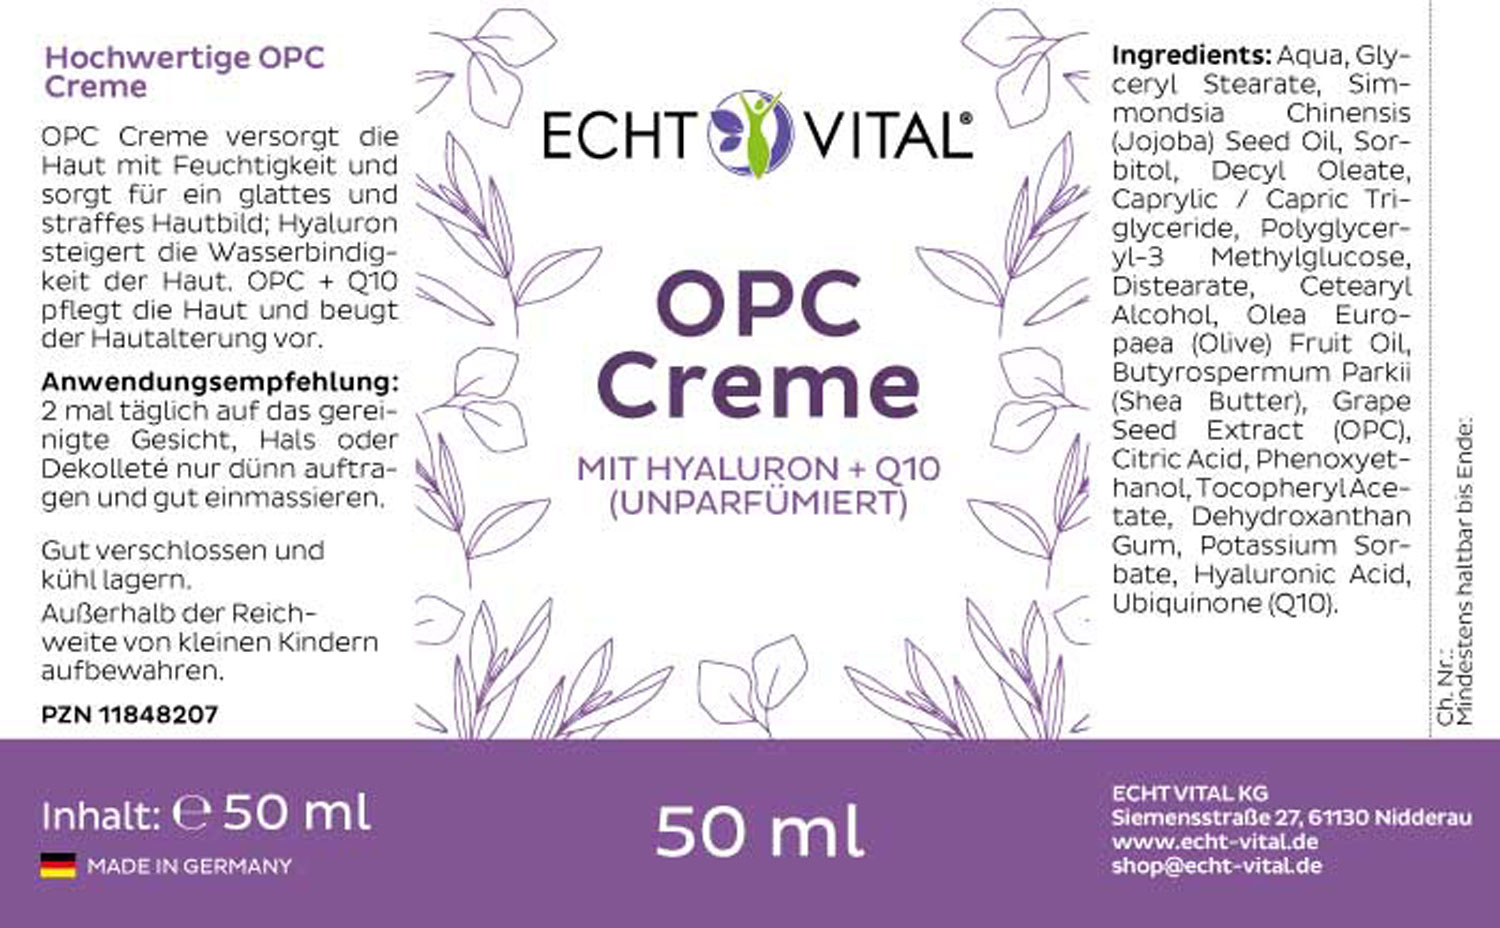 Etikett OPC Creme parfümfrei von Echt Vital in 50 Milliliter Packung